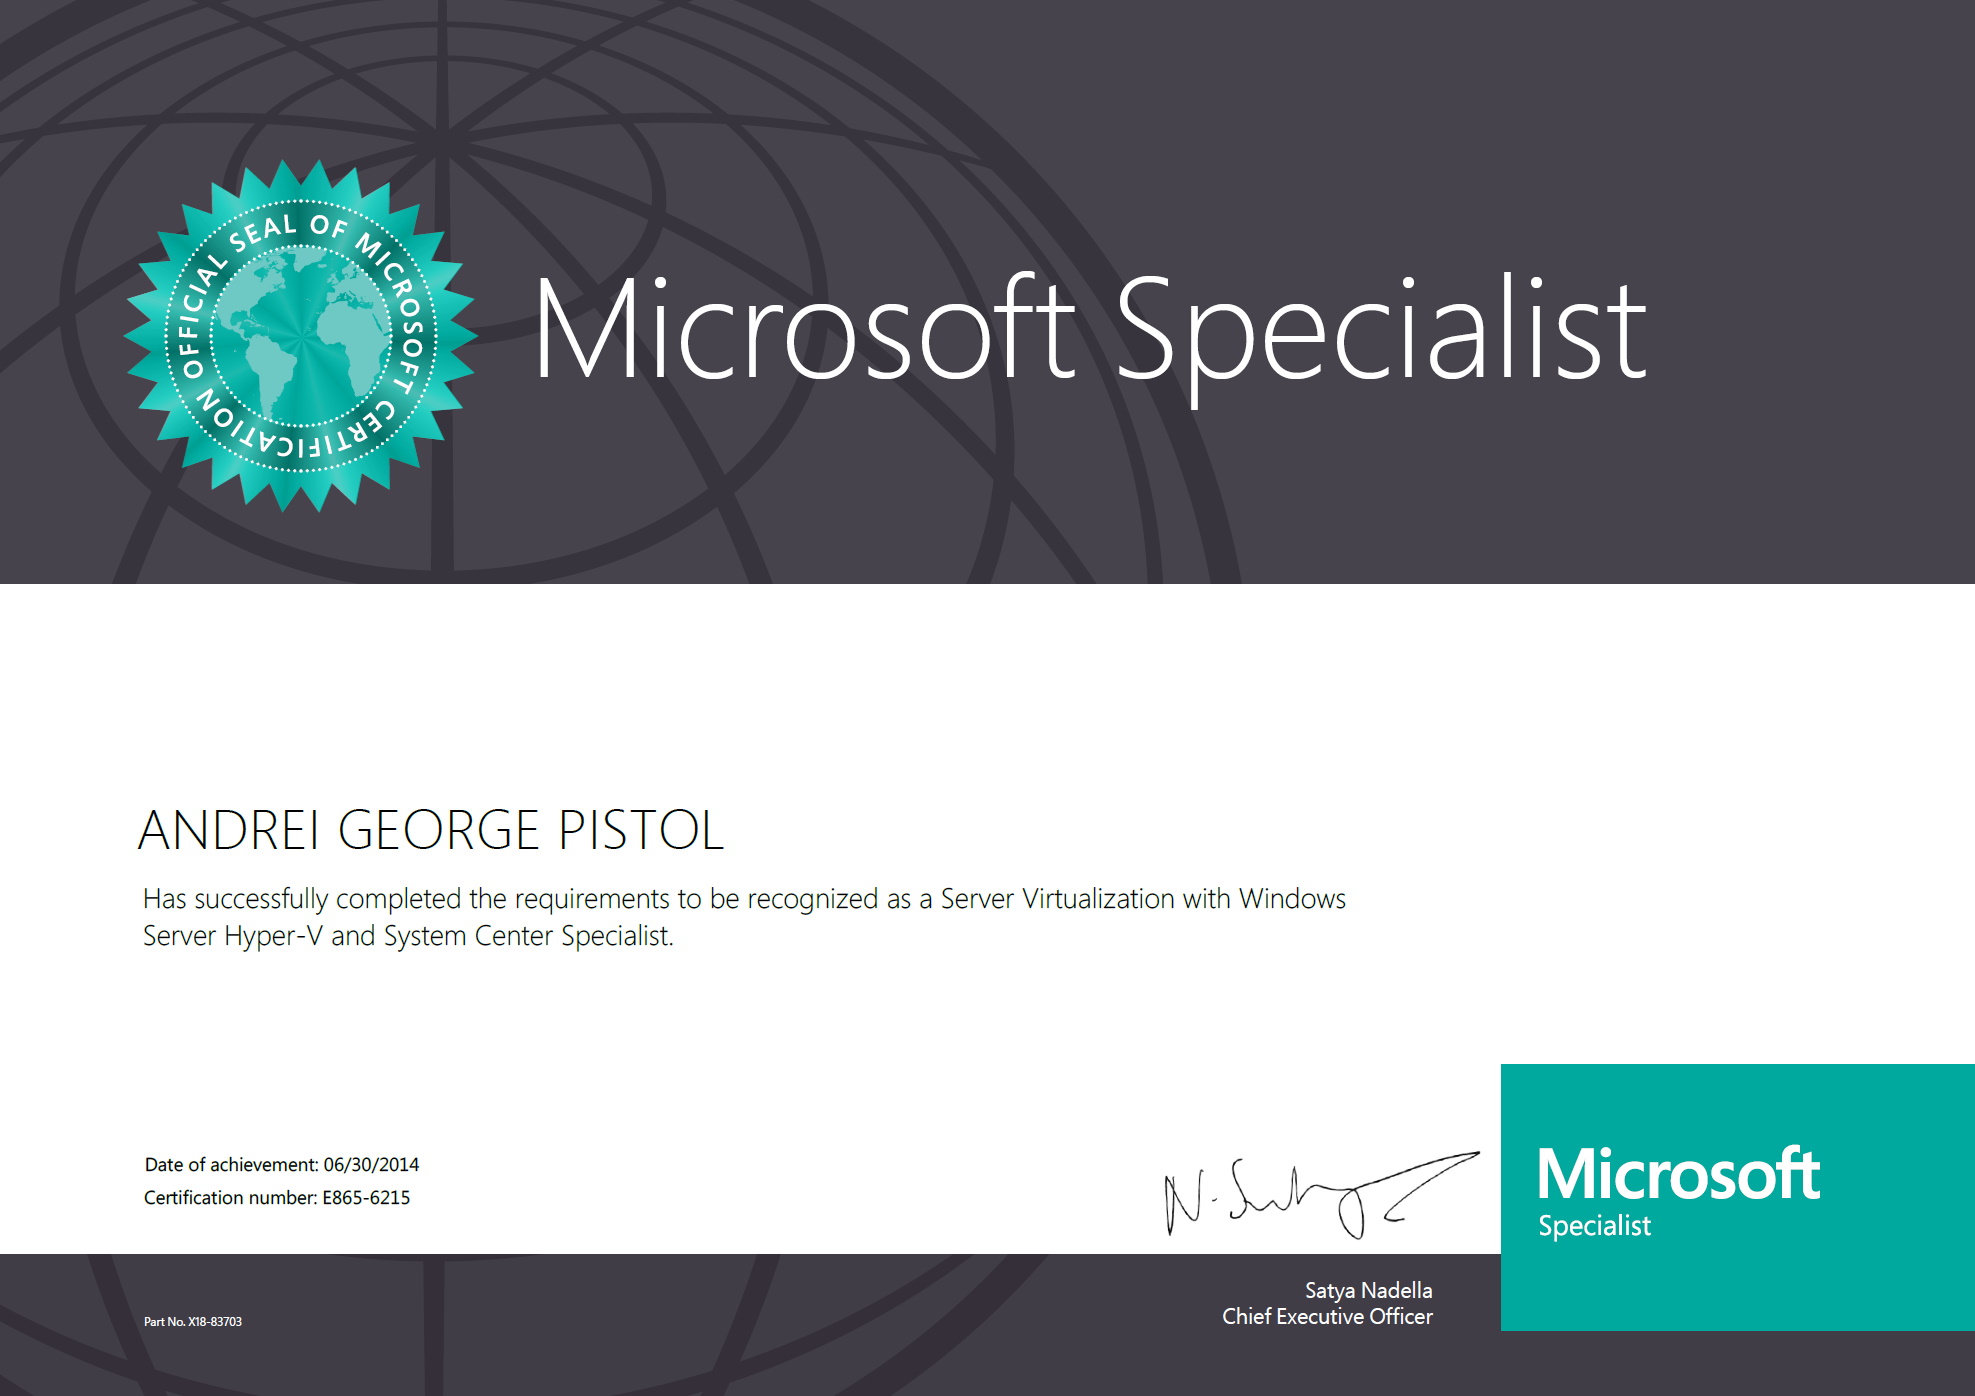 Andrei Pistol "JeFawk" is a certified Microsoft Specialist